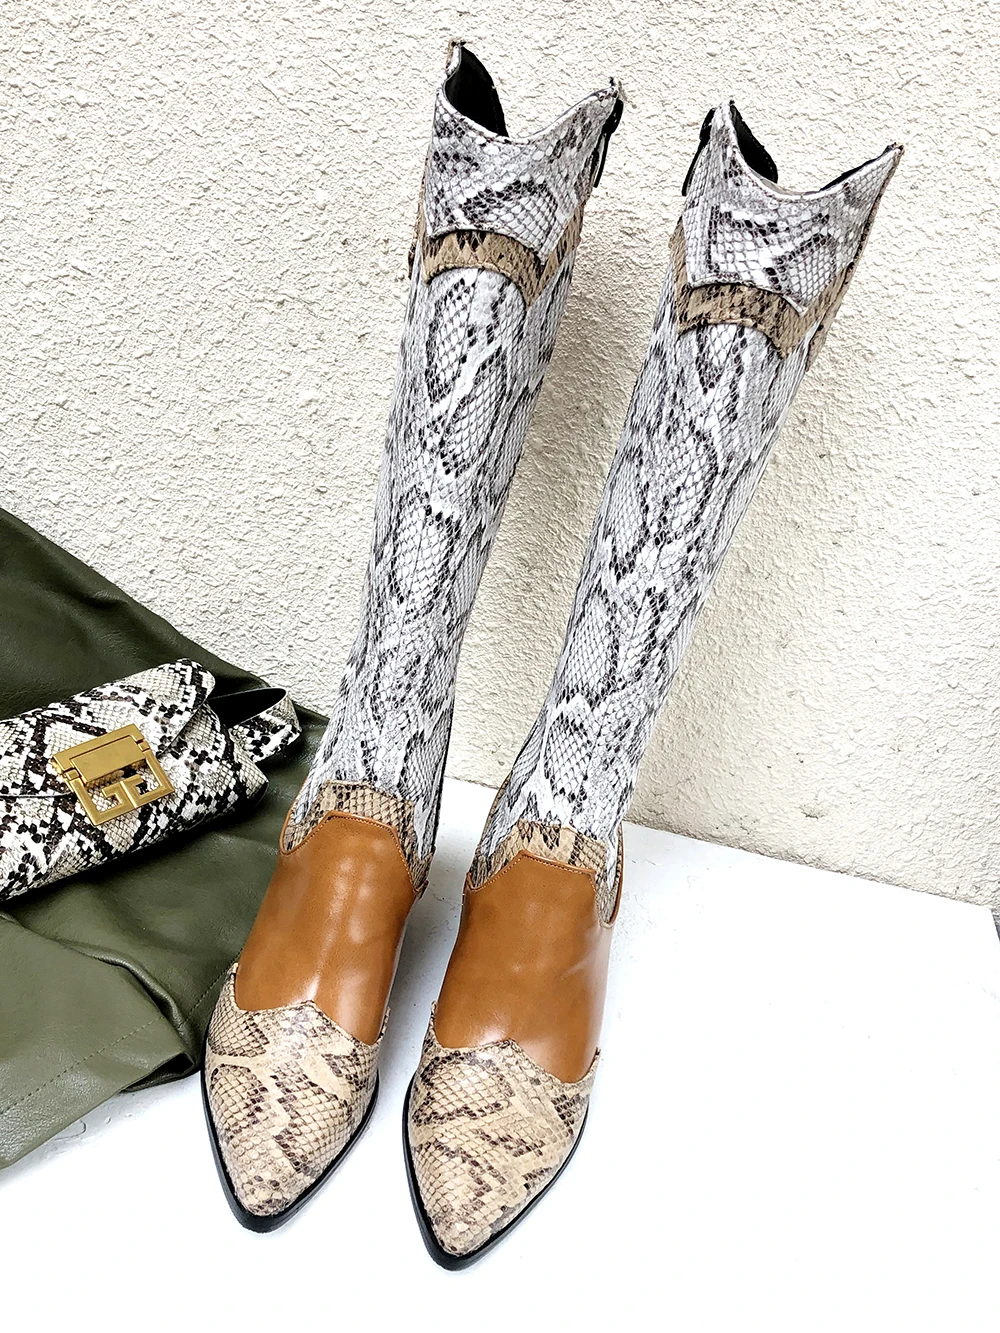 Г., женские ботинки с принтом змеи, Западная пастушка женские ковбойские ботильоны из искусственной кожи в стиле пэчворк женские высокие сапоги на высоком каблуке, Bota, 38, 41